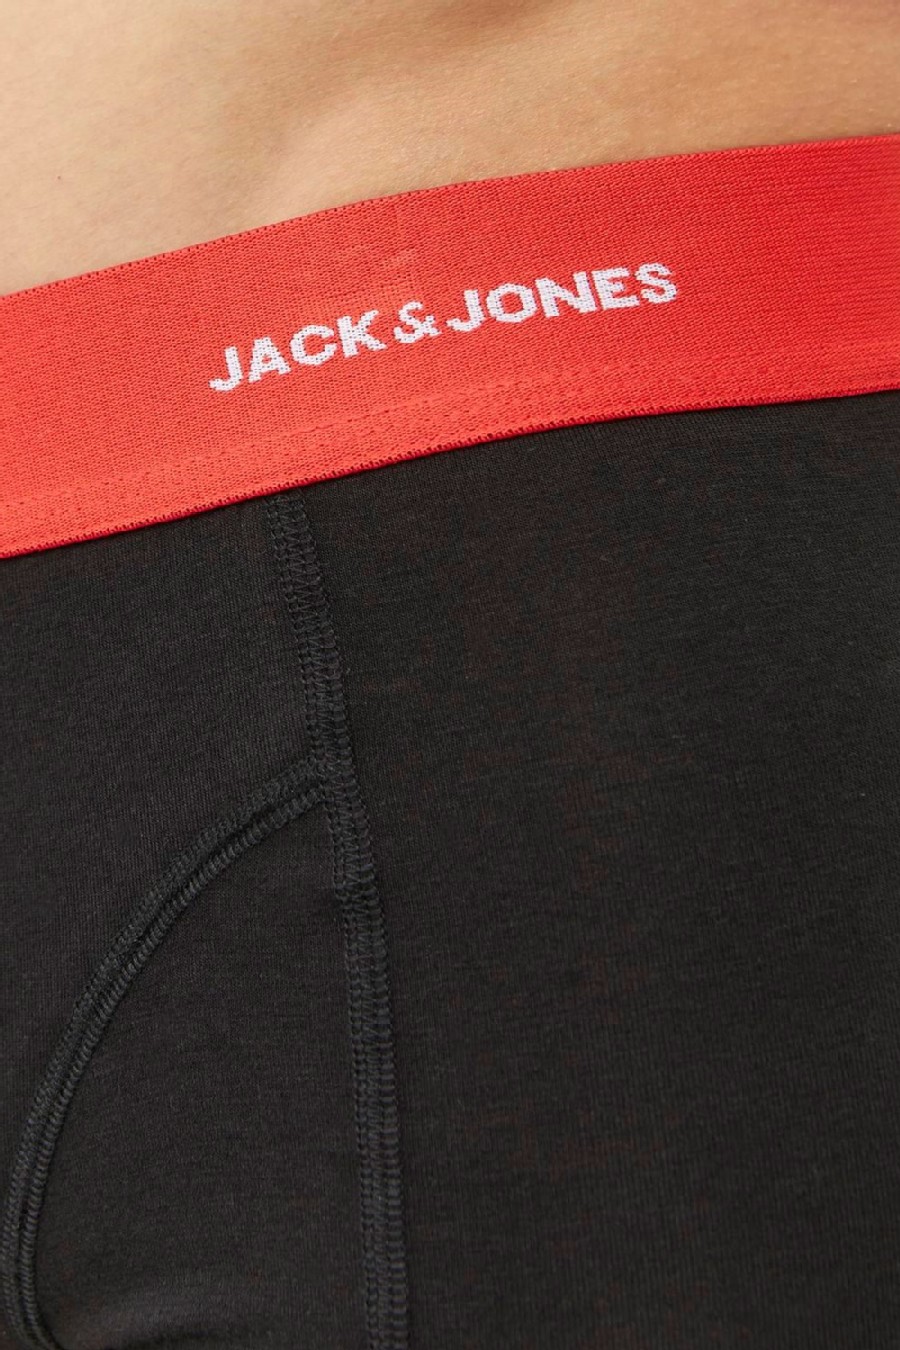 Bokseršorti JACK & JONES 12240403-Black-Black